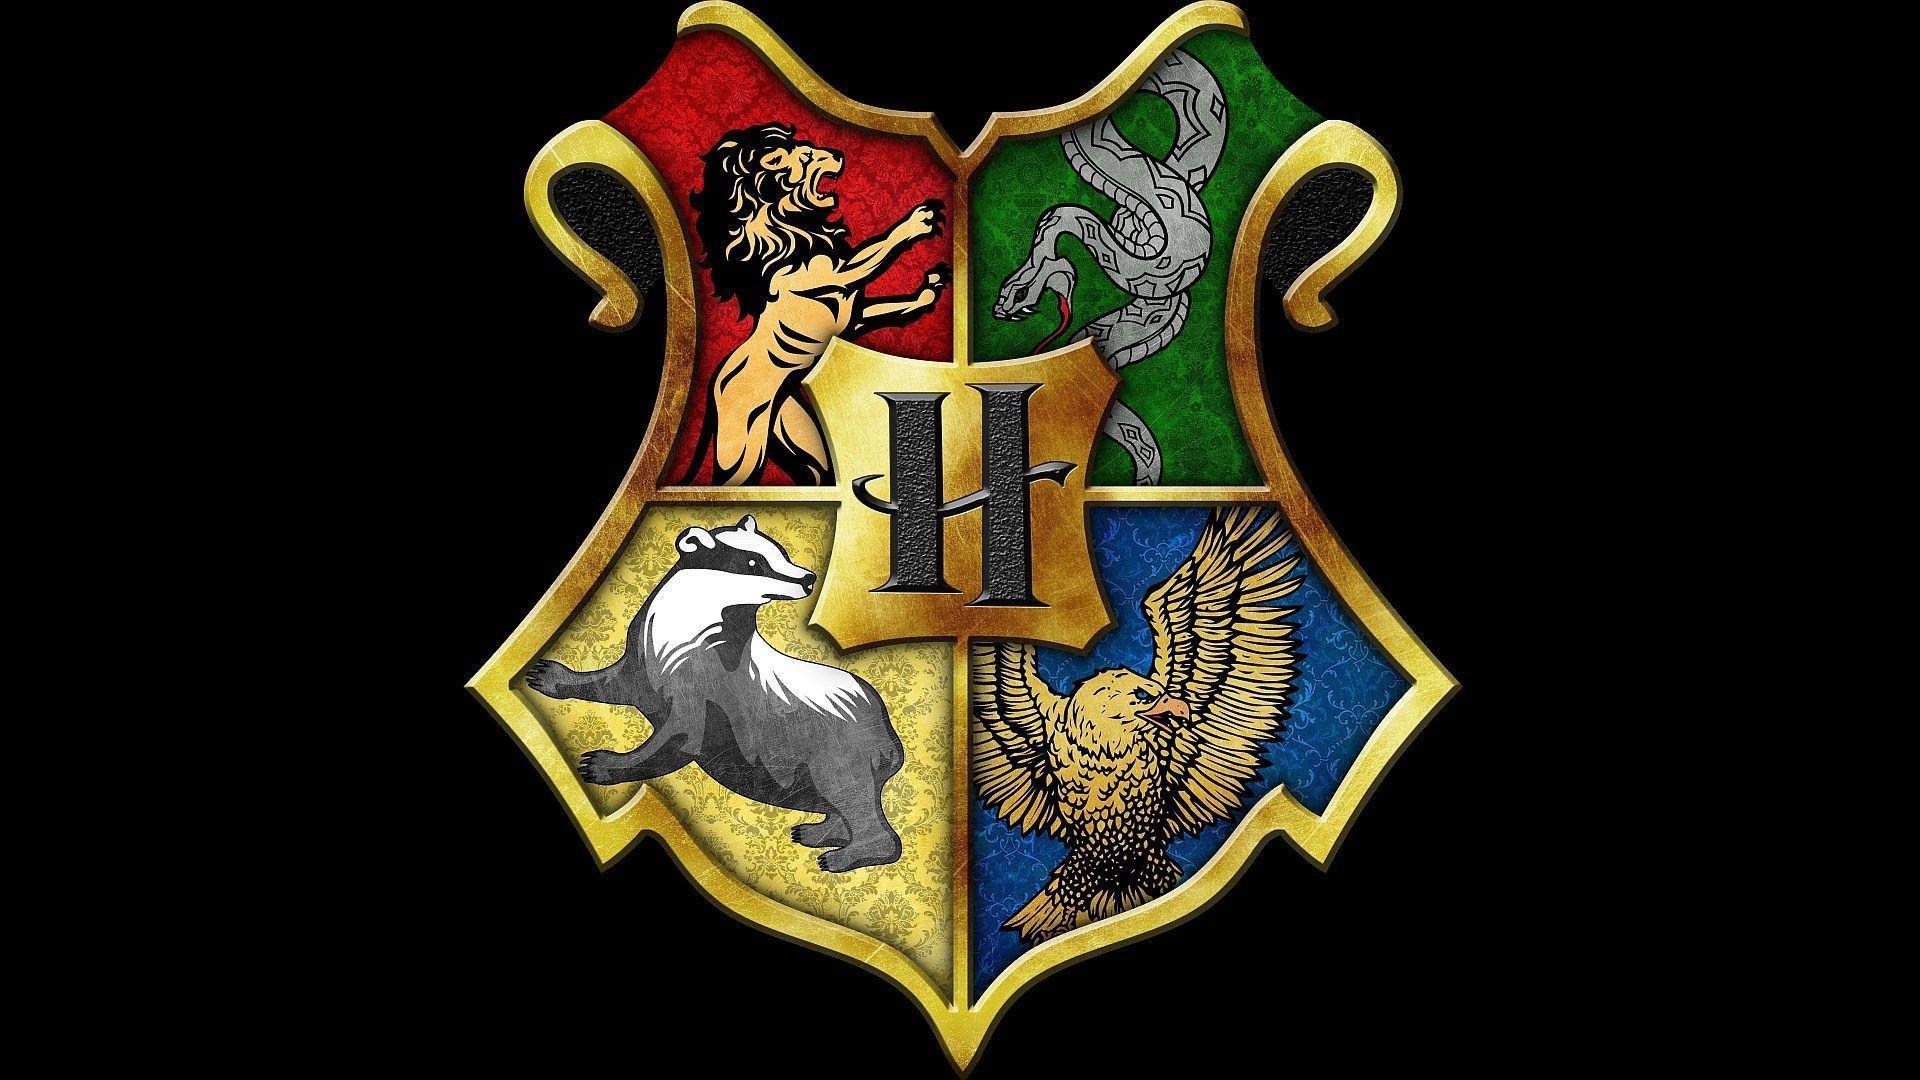 1920 x 1080 · jpeg - Hogwarts Crest Wallpapers - Wallpaper Cave